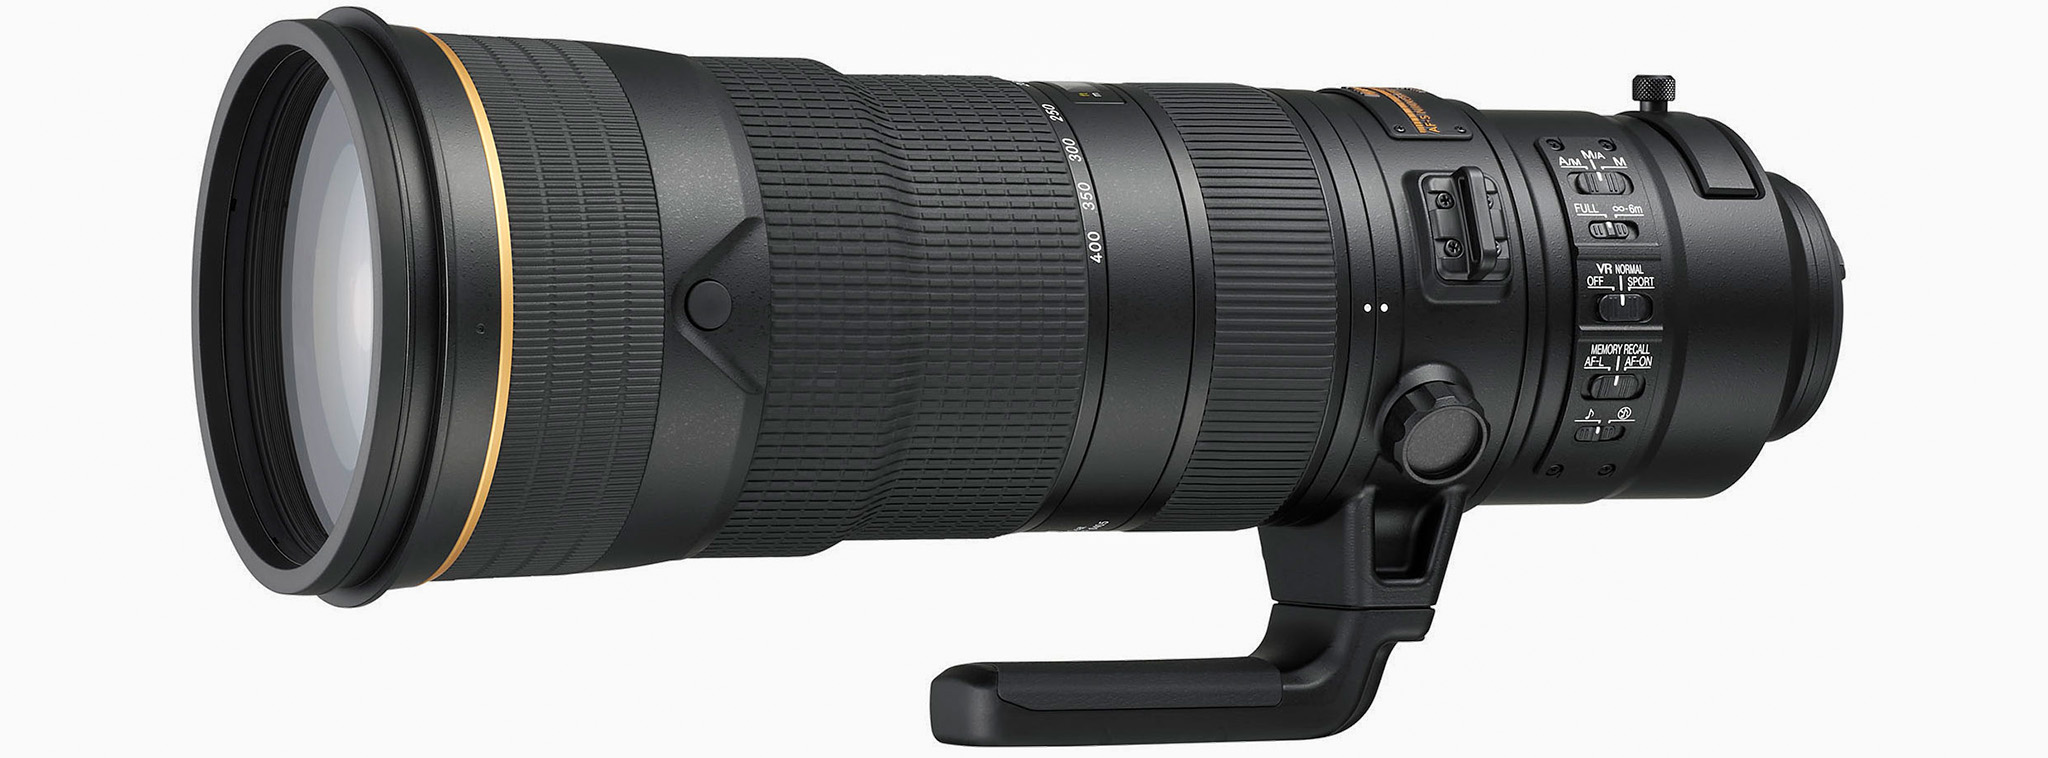 [CES18] Nikon ra mắt ống Nikkor 180-400mm F4E với teleconverter 1.4X tích hợp, giá lên đến $12400